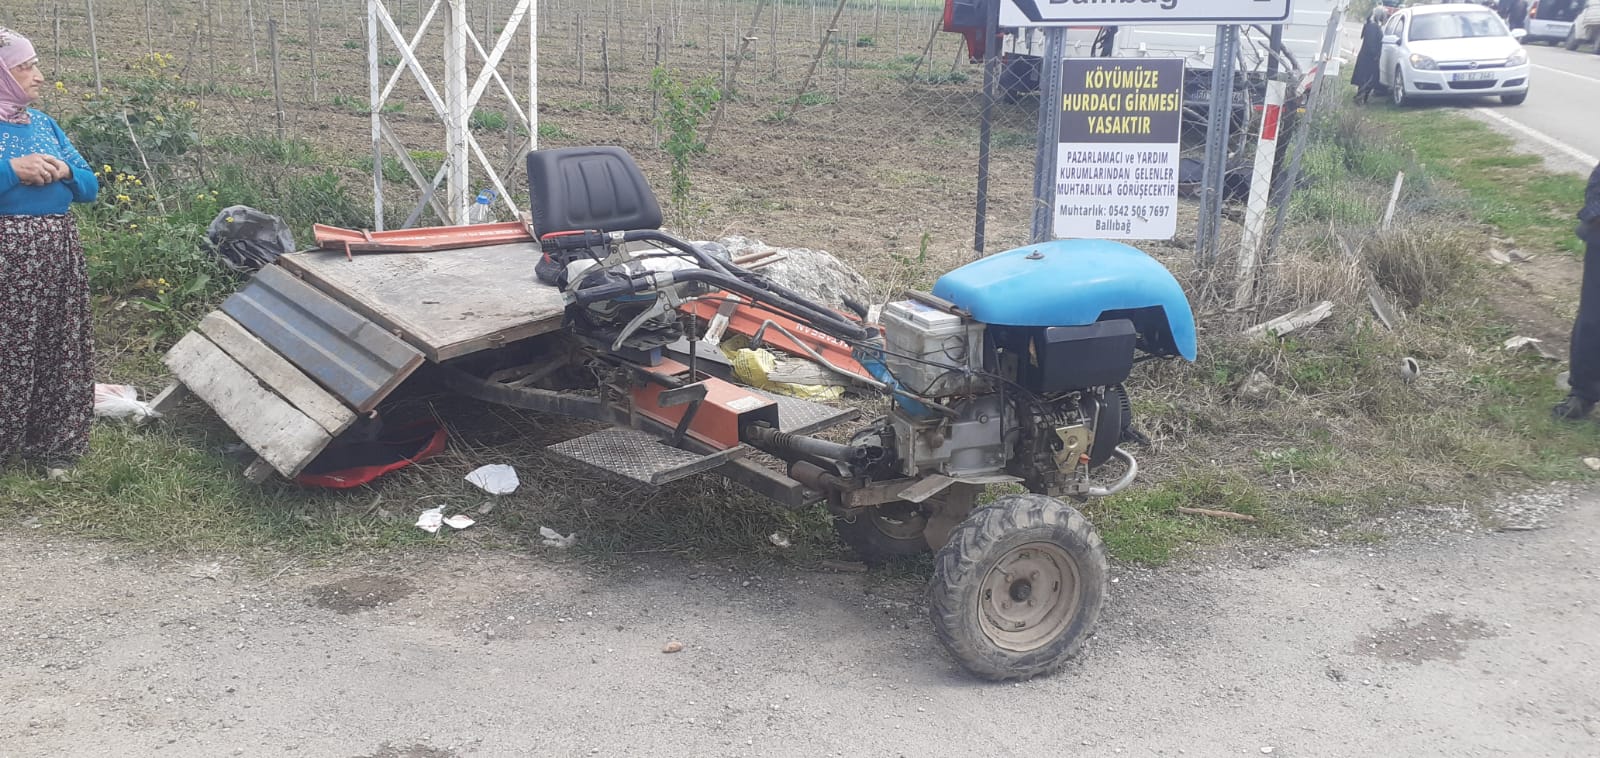 Kamyonet ile tarım aracının çarpıştığı kazada 1 kişi öldü, 2 kişi yaralandı